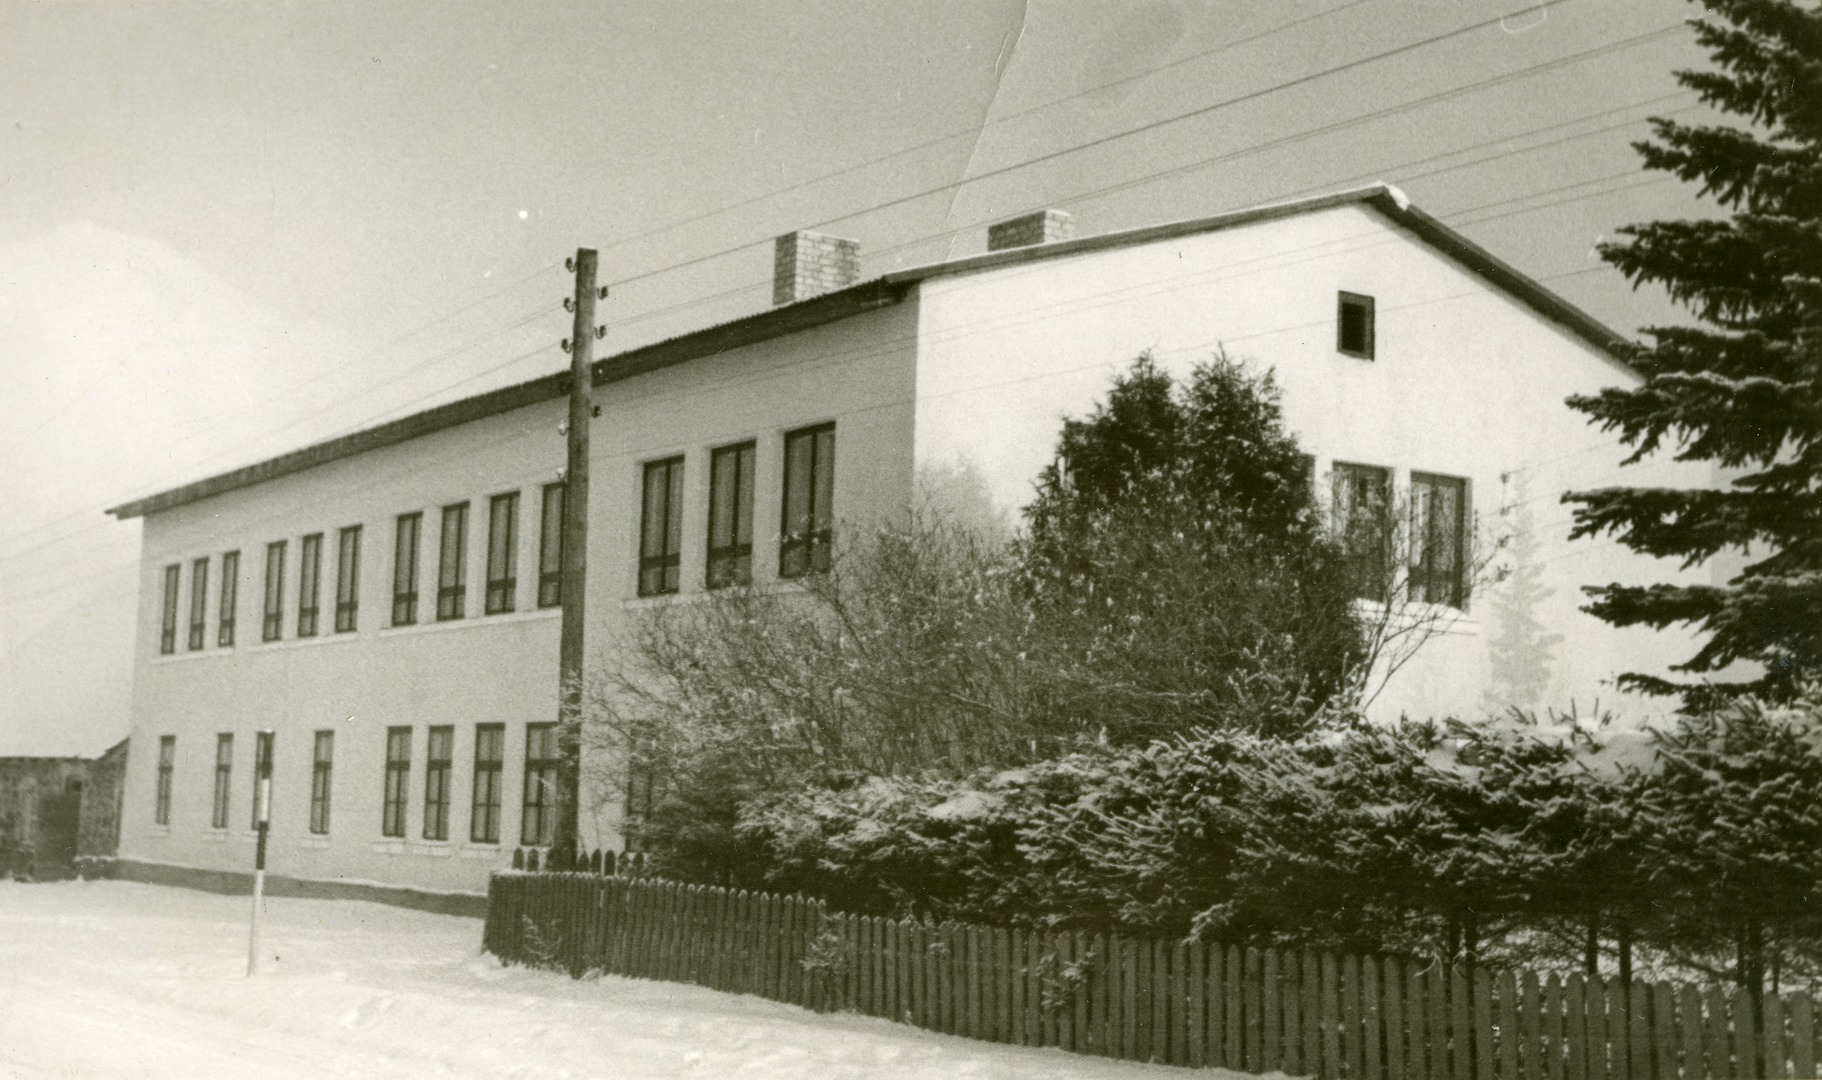 Viljandi County Ülemõisa Algkooli building